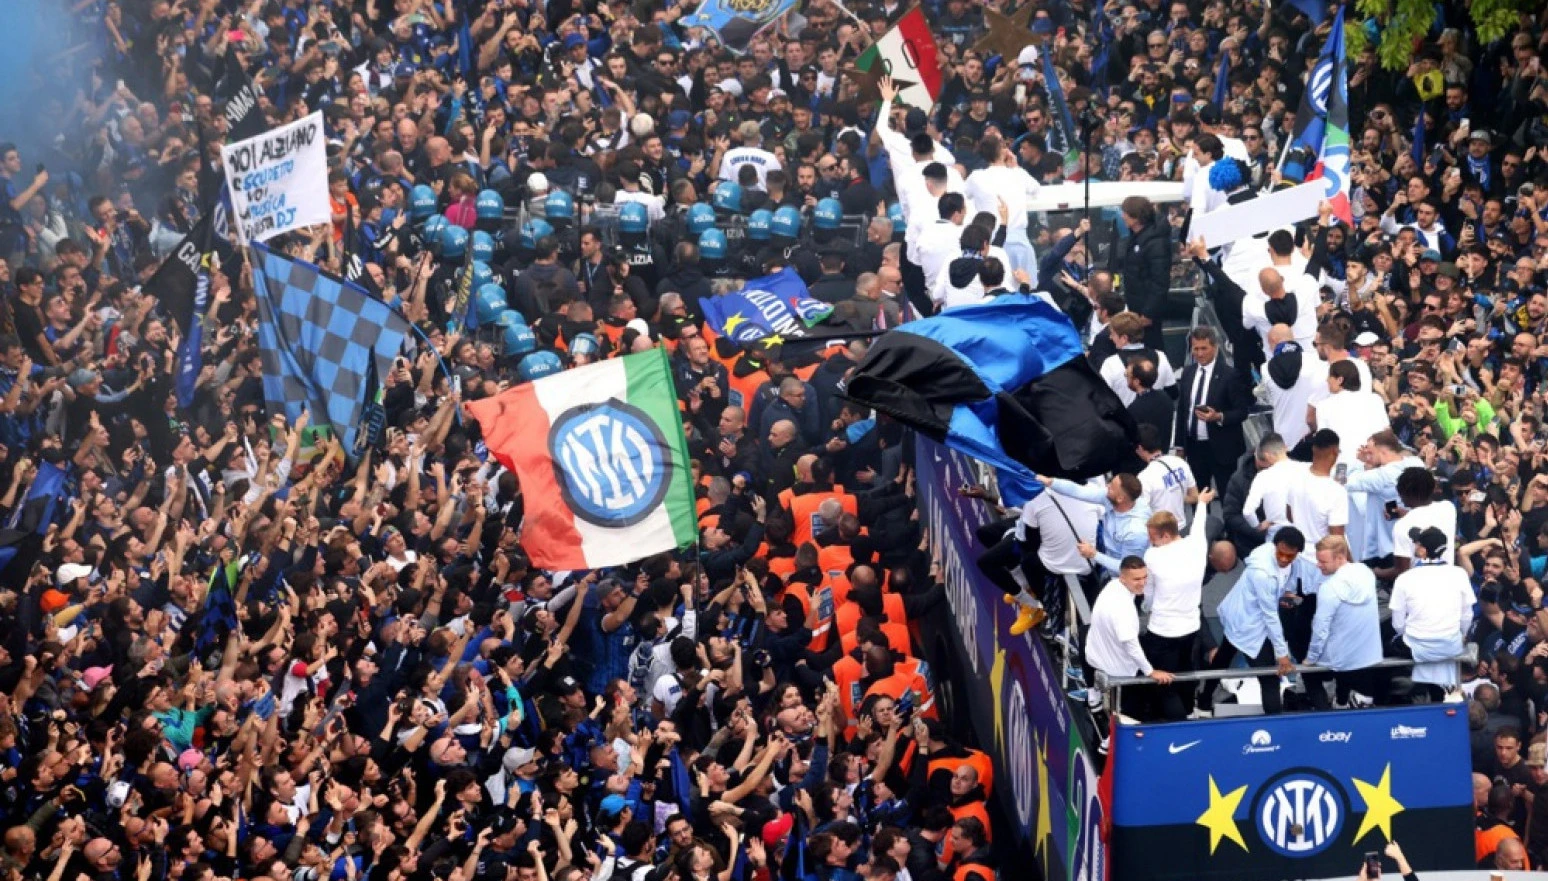 FS Italije otvorio istragu zbog skandalozne proslave fudbalera Intera